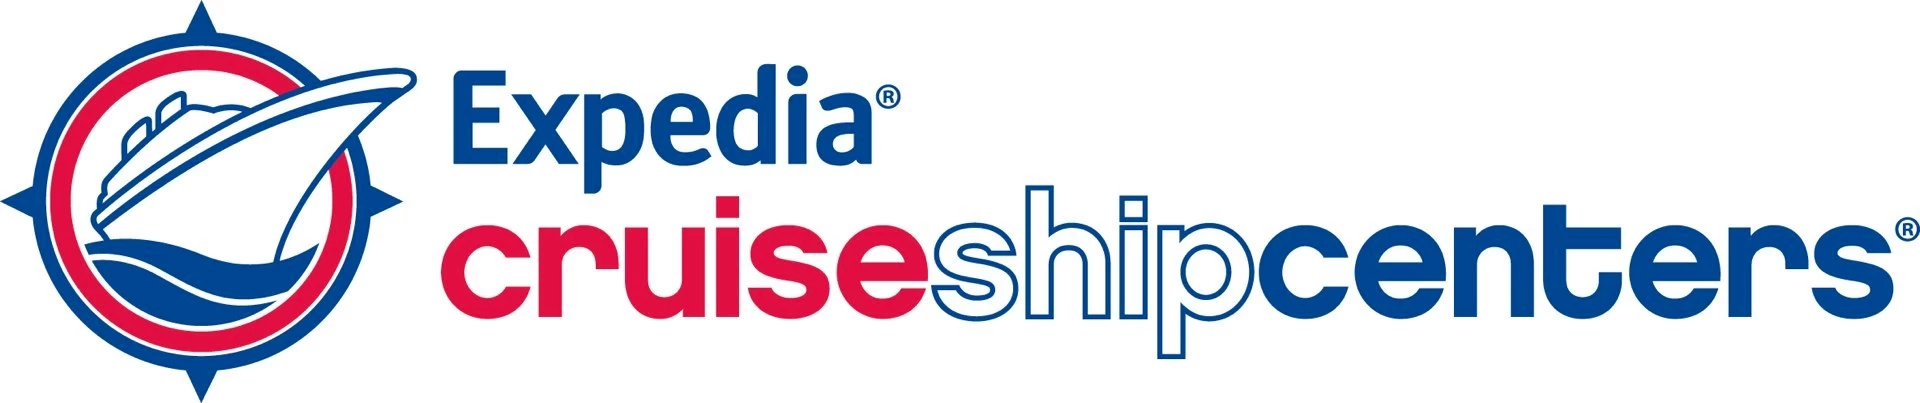 Expedia CruiseShipCenters Franchise Information